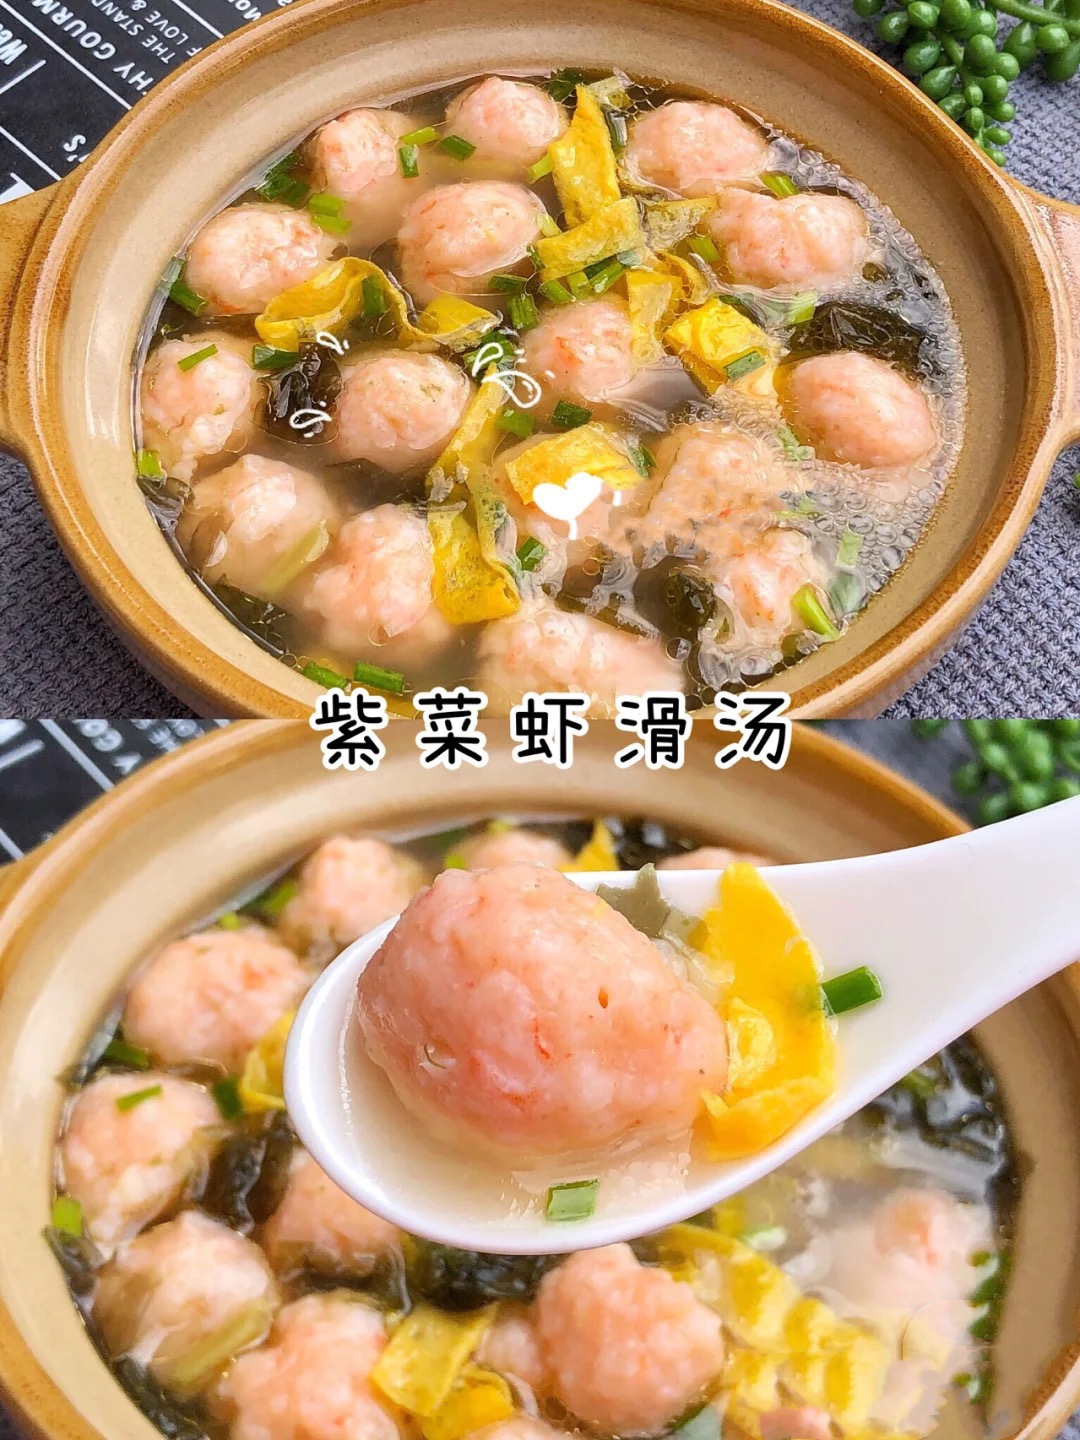 团团圆圆的Q弹鲜美紫菜虾滑汤🍲的做法